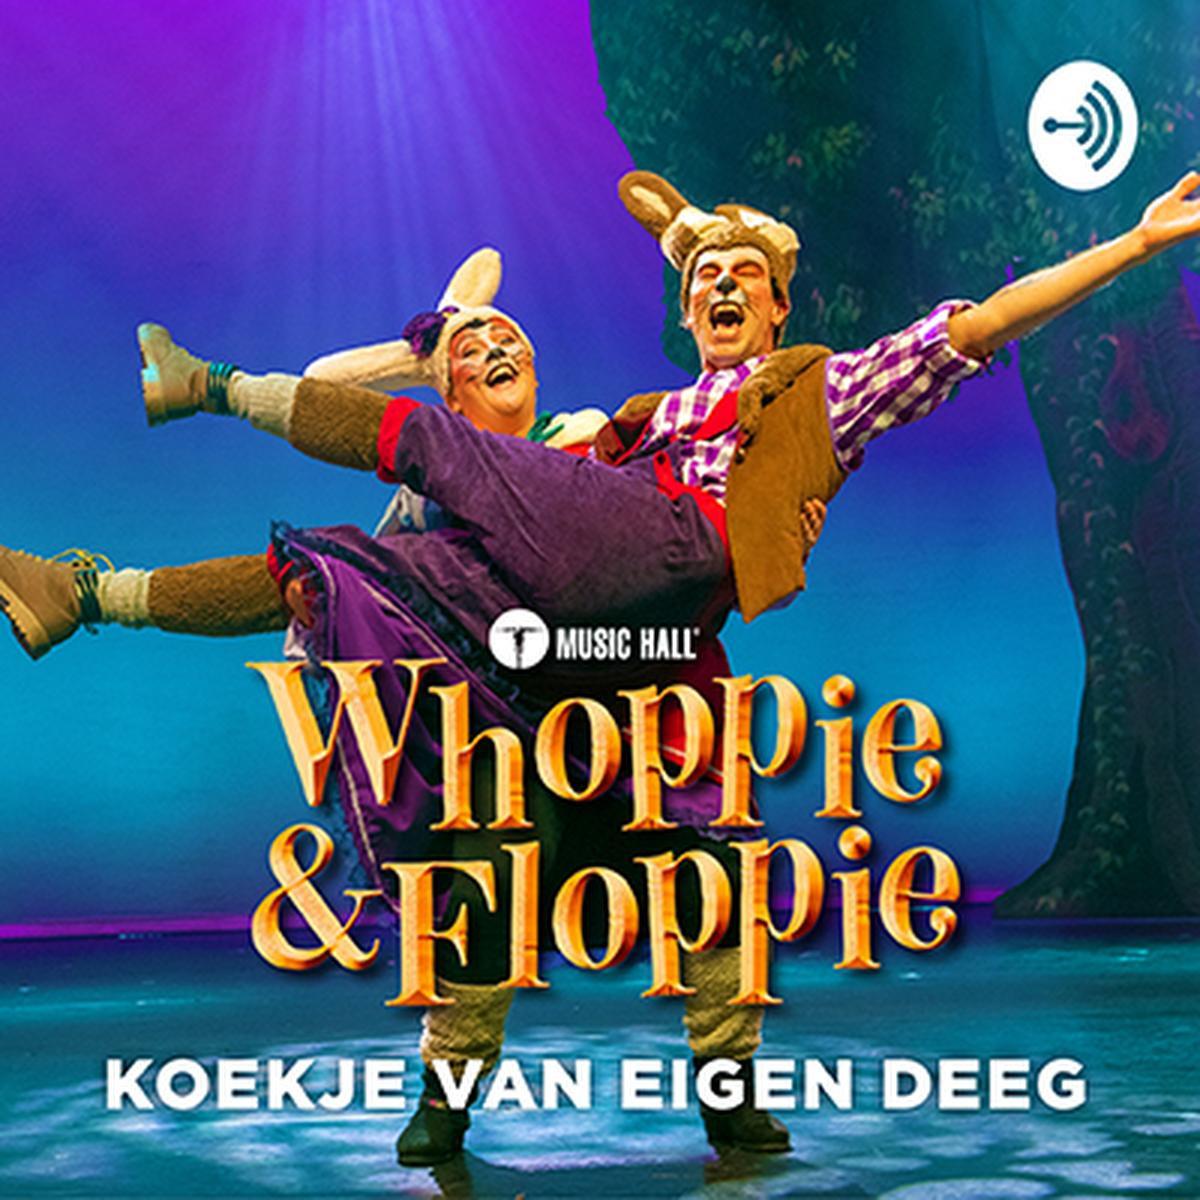 Populair West-Vlaams konijnenduo 'Whoppie en Floppie' lanceert eerste hoorspel